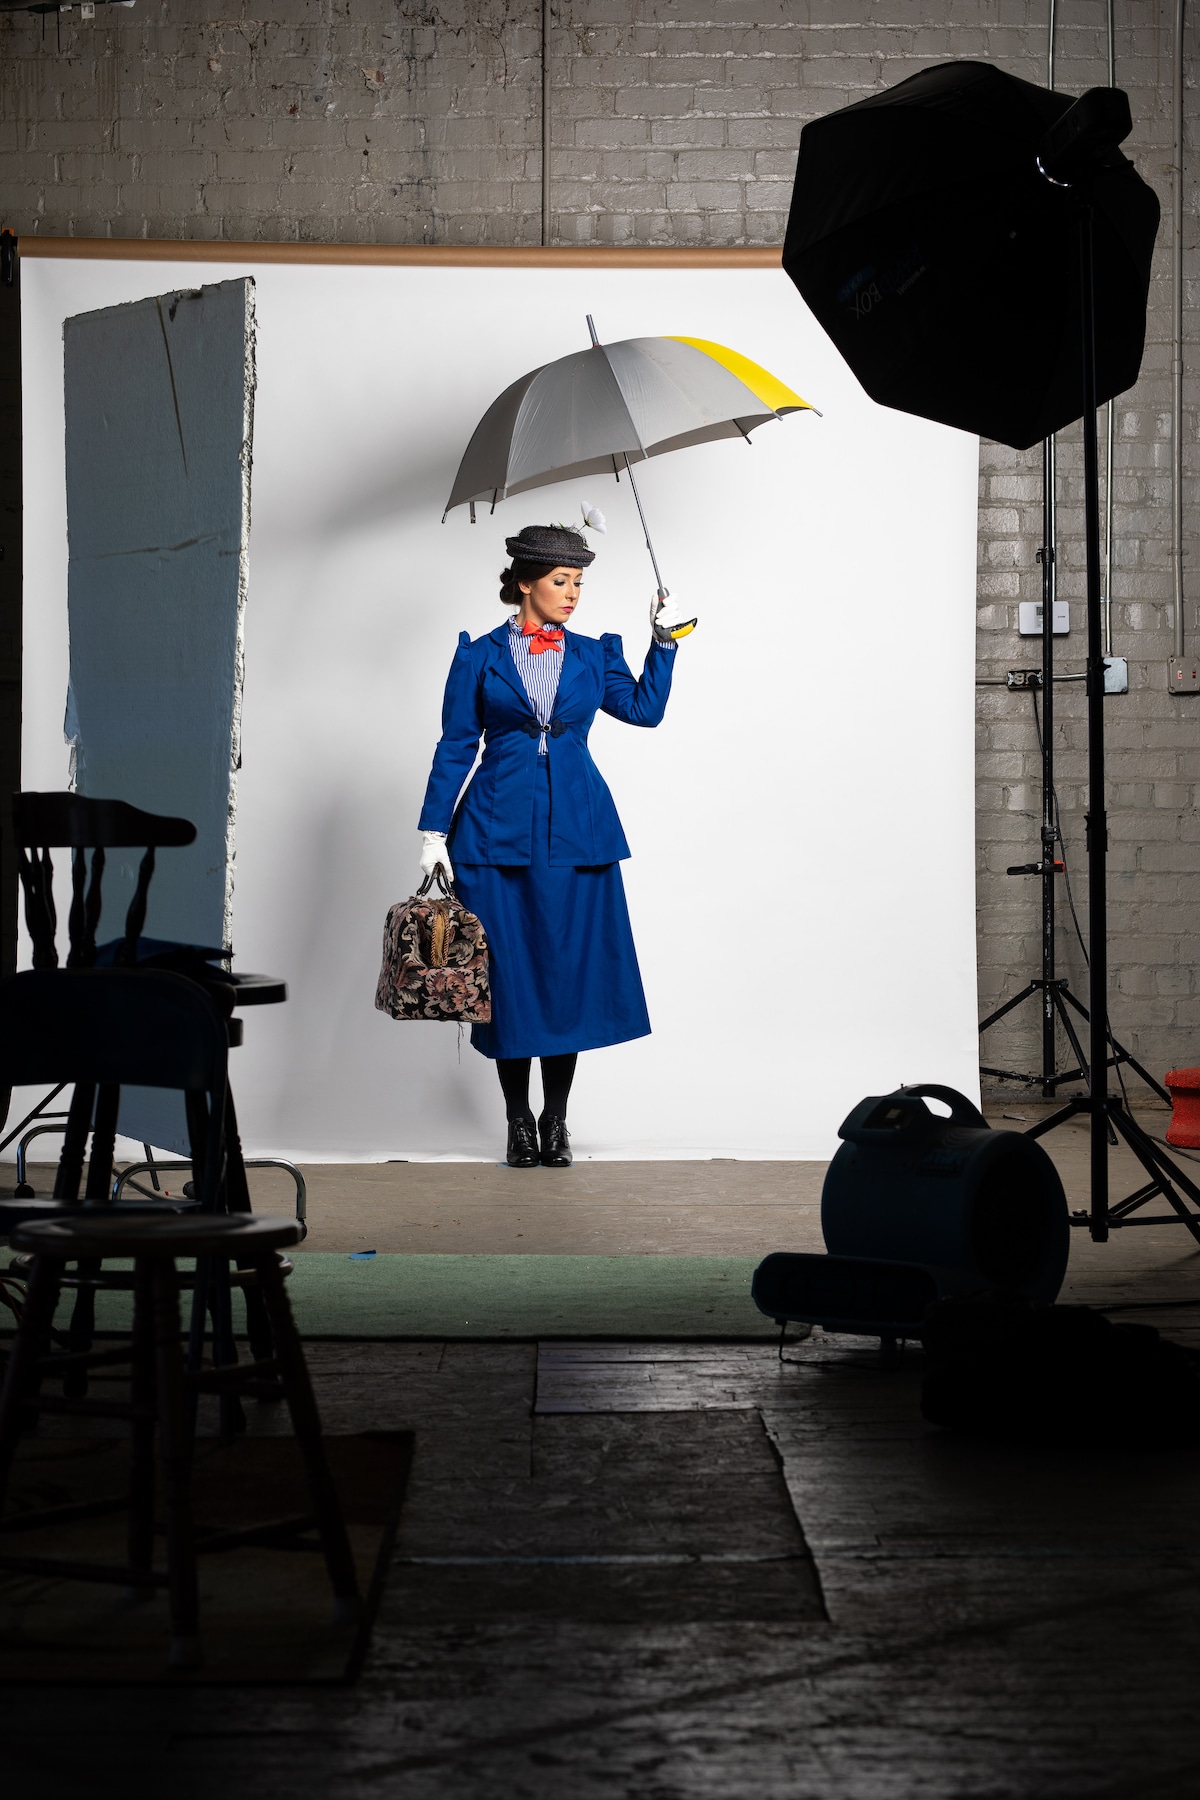 Fotografía de modelo a escala de Mary Poppins